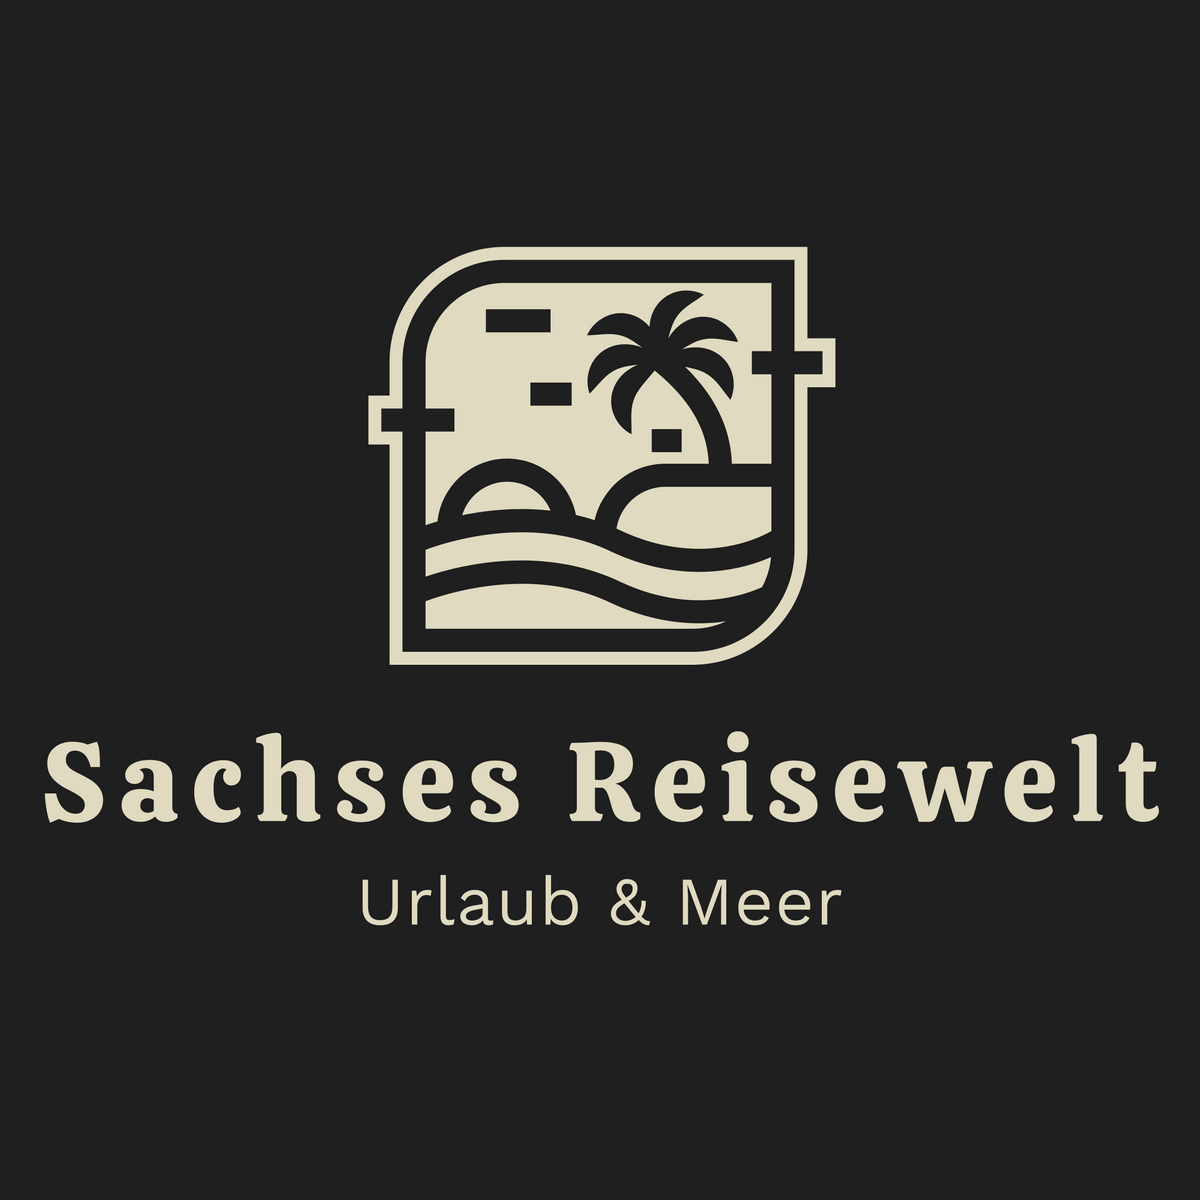 Sachses Reisewelt - Urlaub & Meer